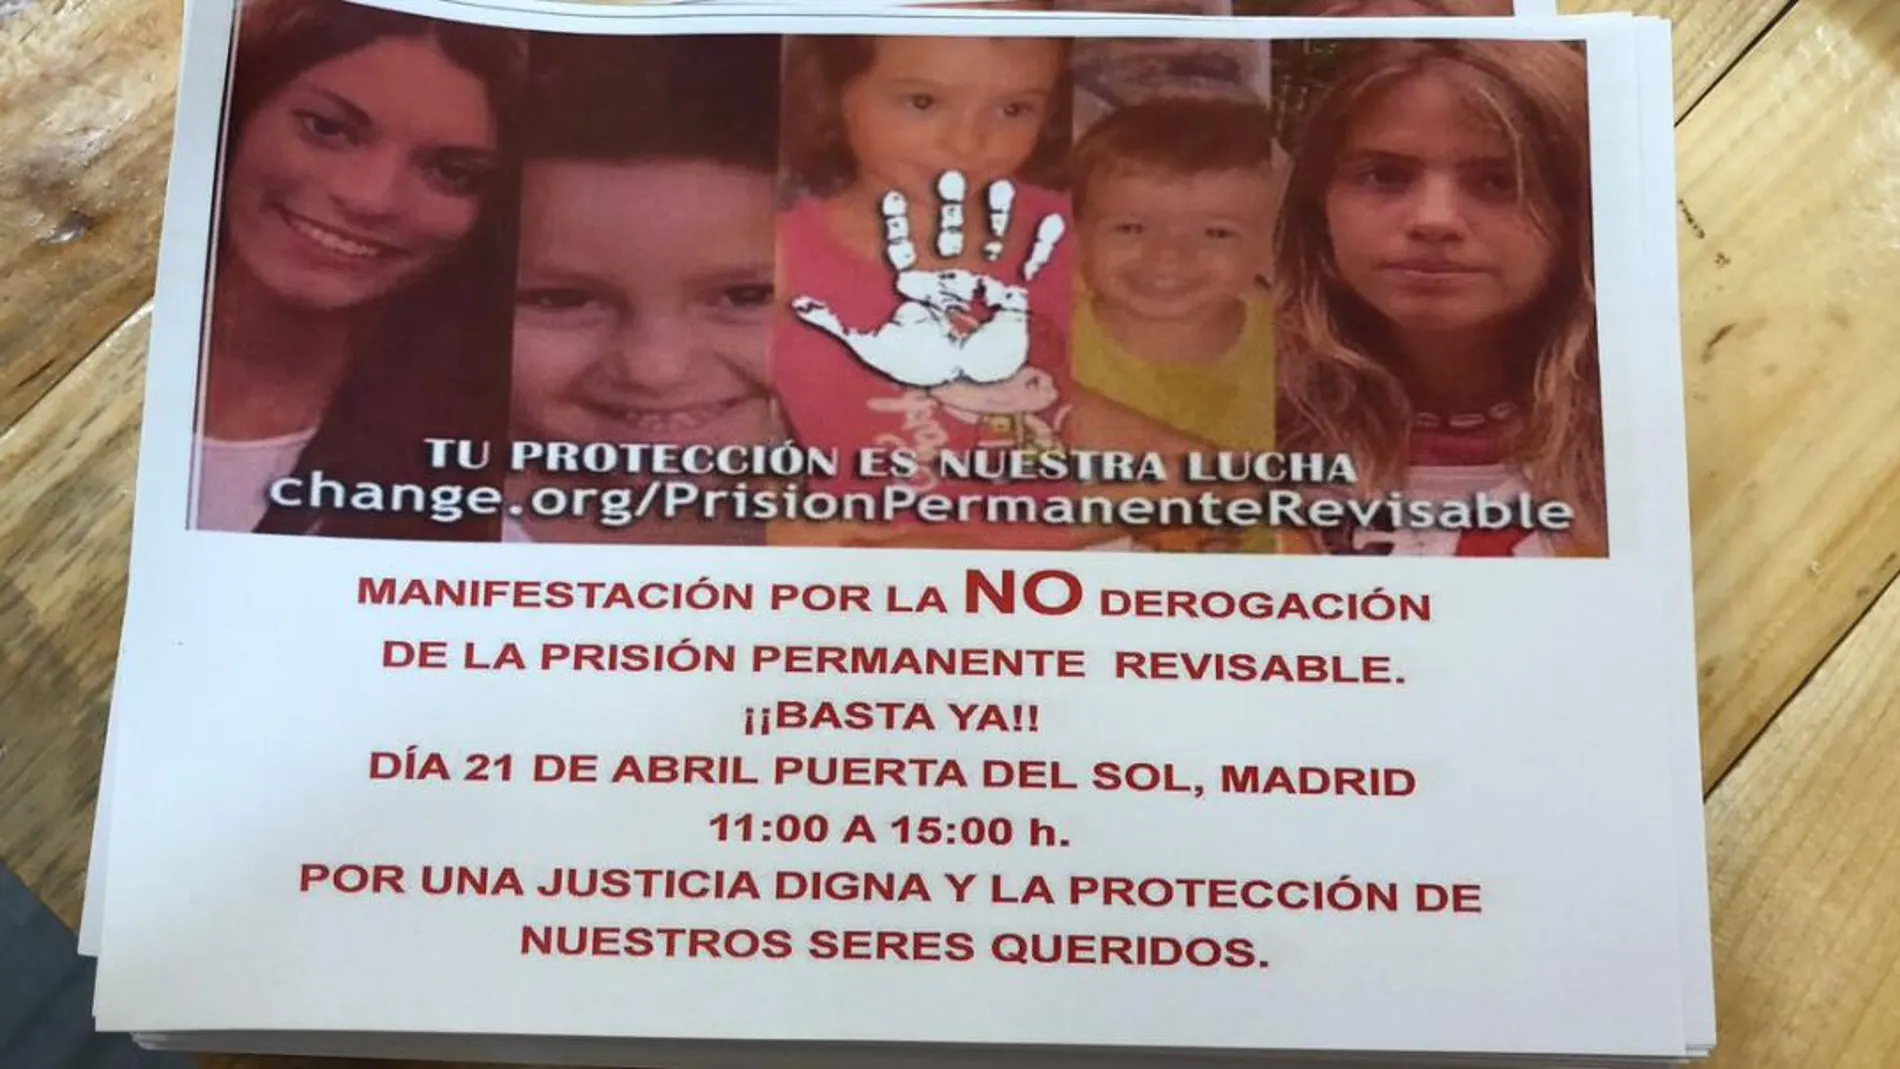 La hermana de Diana Quer impulsa una manifestación en apoyo a la prisión permanente revisable